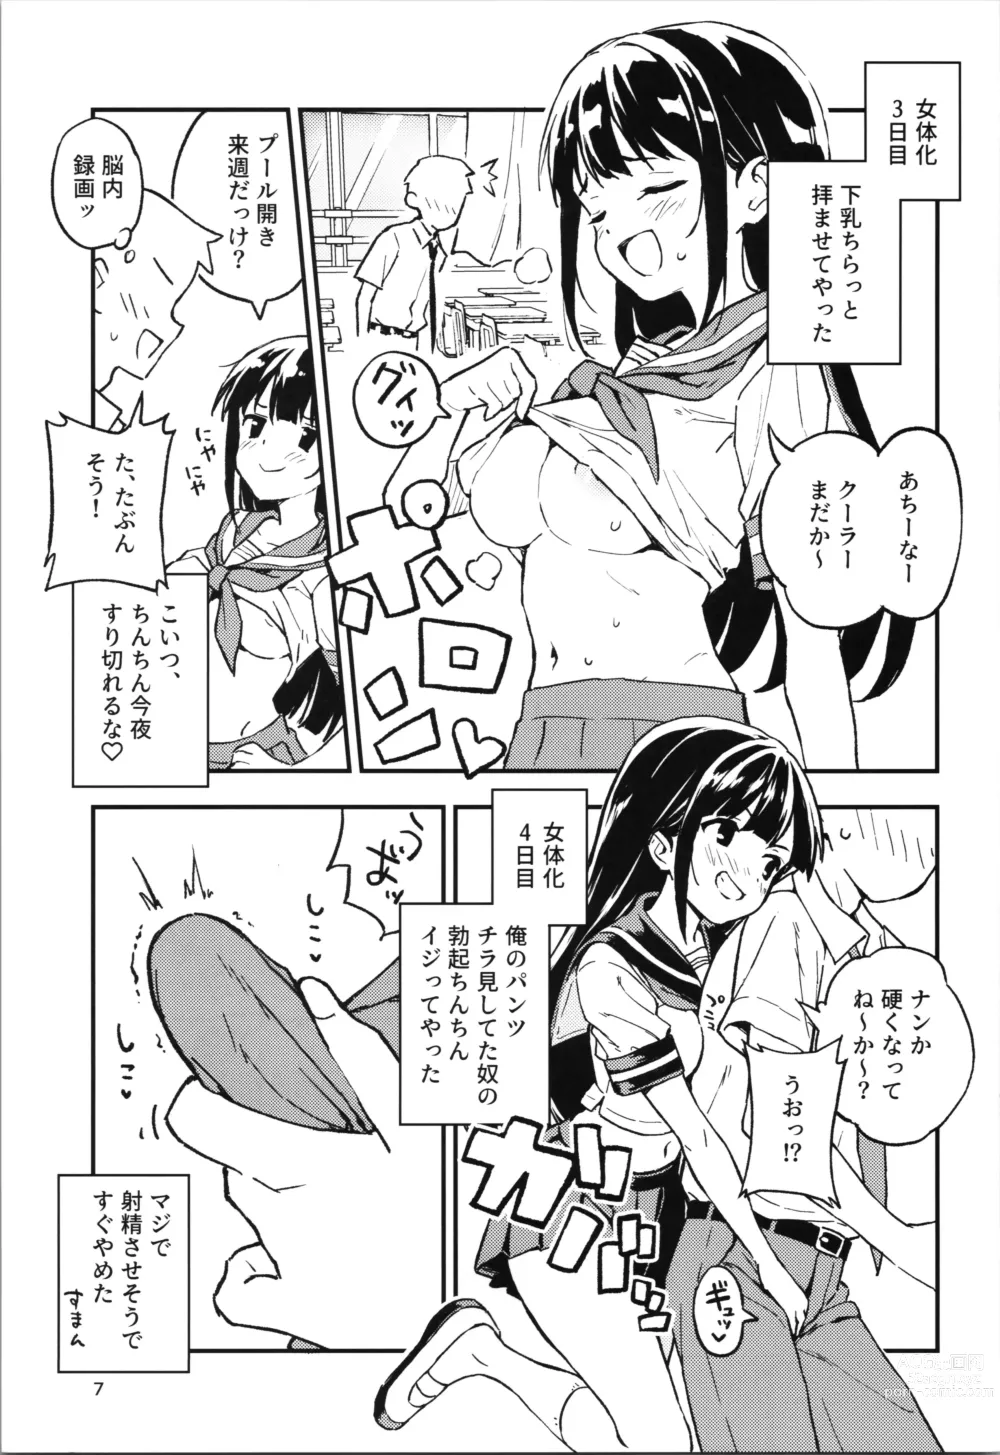 Page 7 of doujinshi 1-kagetsu Ninshin Shinakereba Otoko ni Modoreru Hanashi